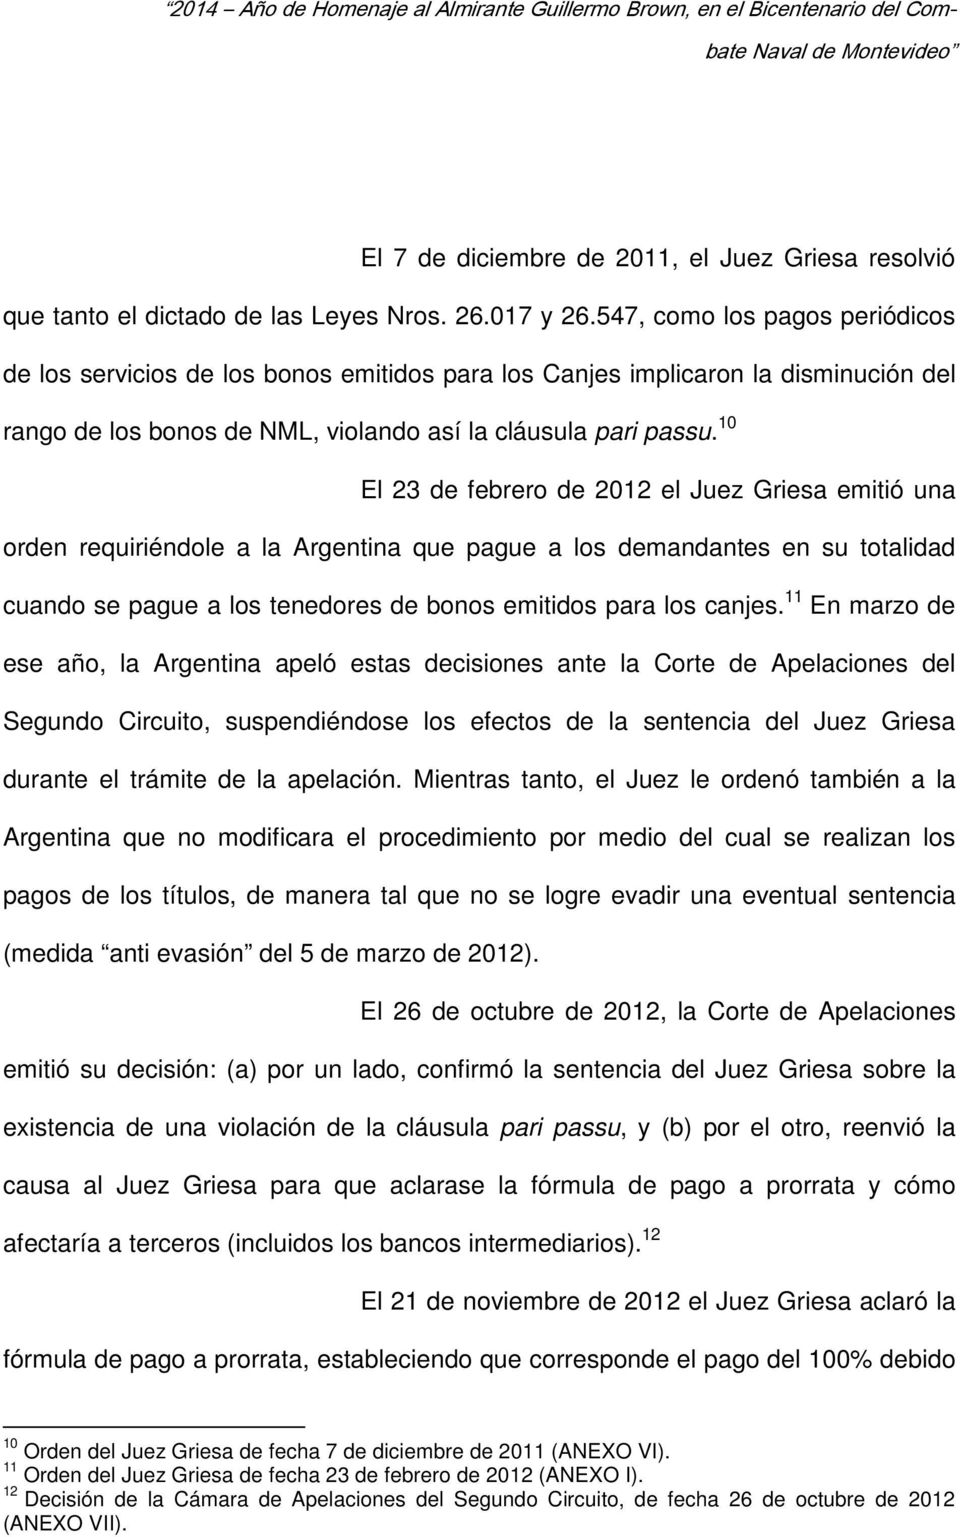 10 El 23 de febrero de 2012 el Juez Griesa emitió una orden requiriéndole a la Argentina que pague a los demandantes en su totalidad cuando se pague a los tenedores de bonos emitidos para los canjes.